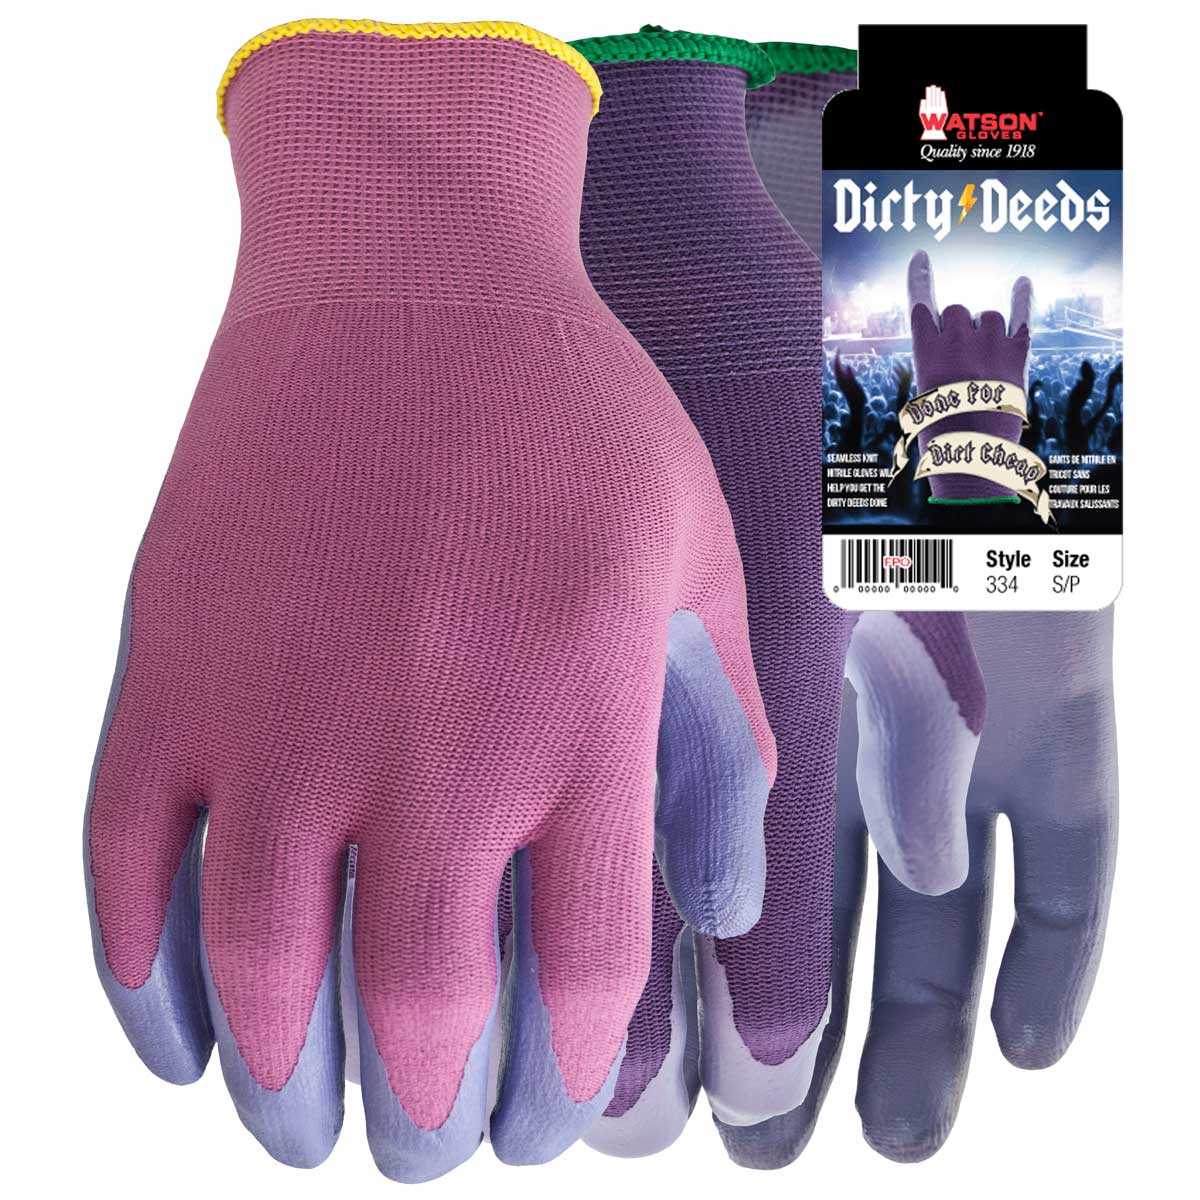 Dirty Deeds General Purpose Work Gloves